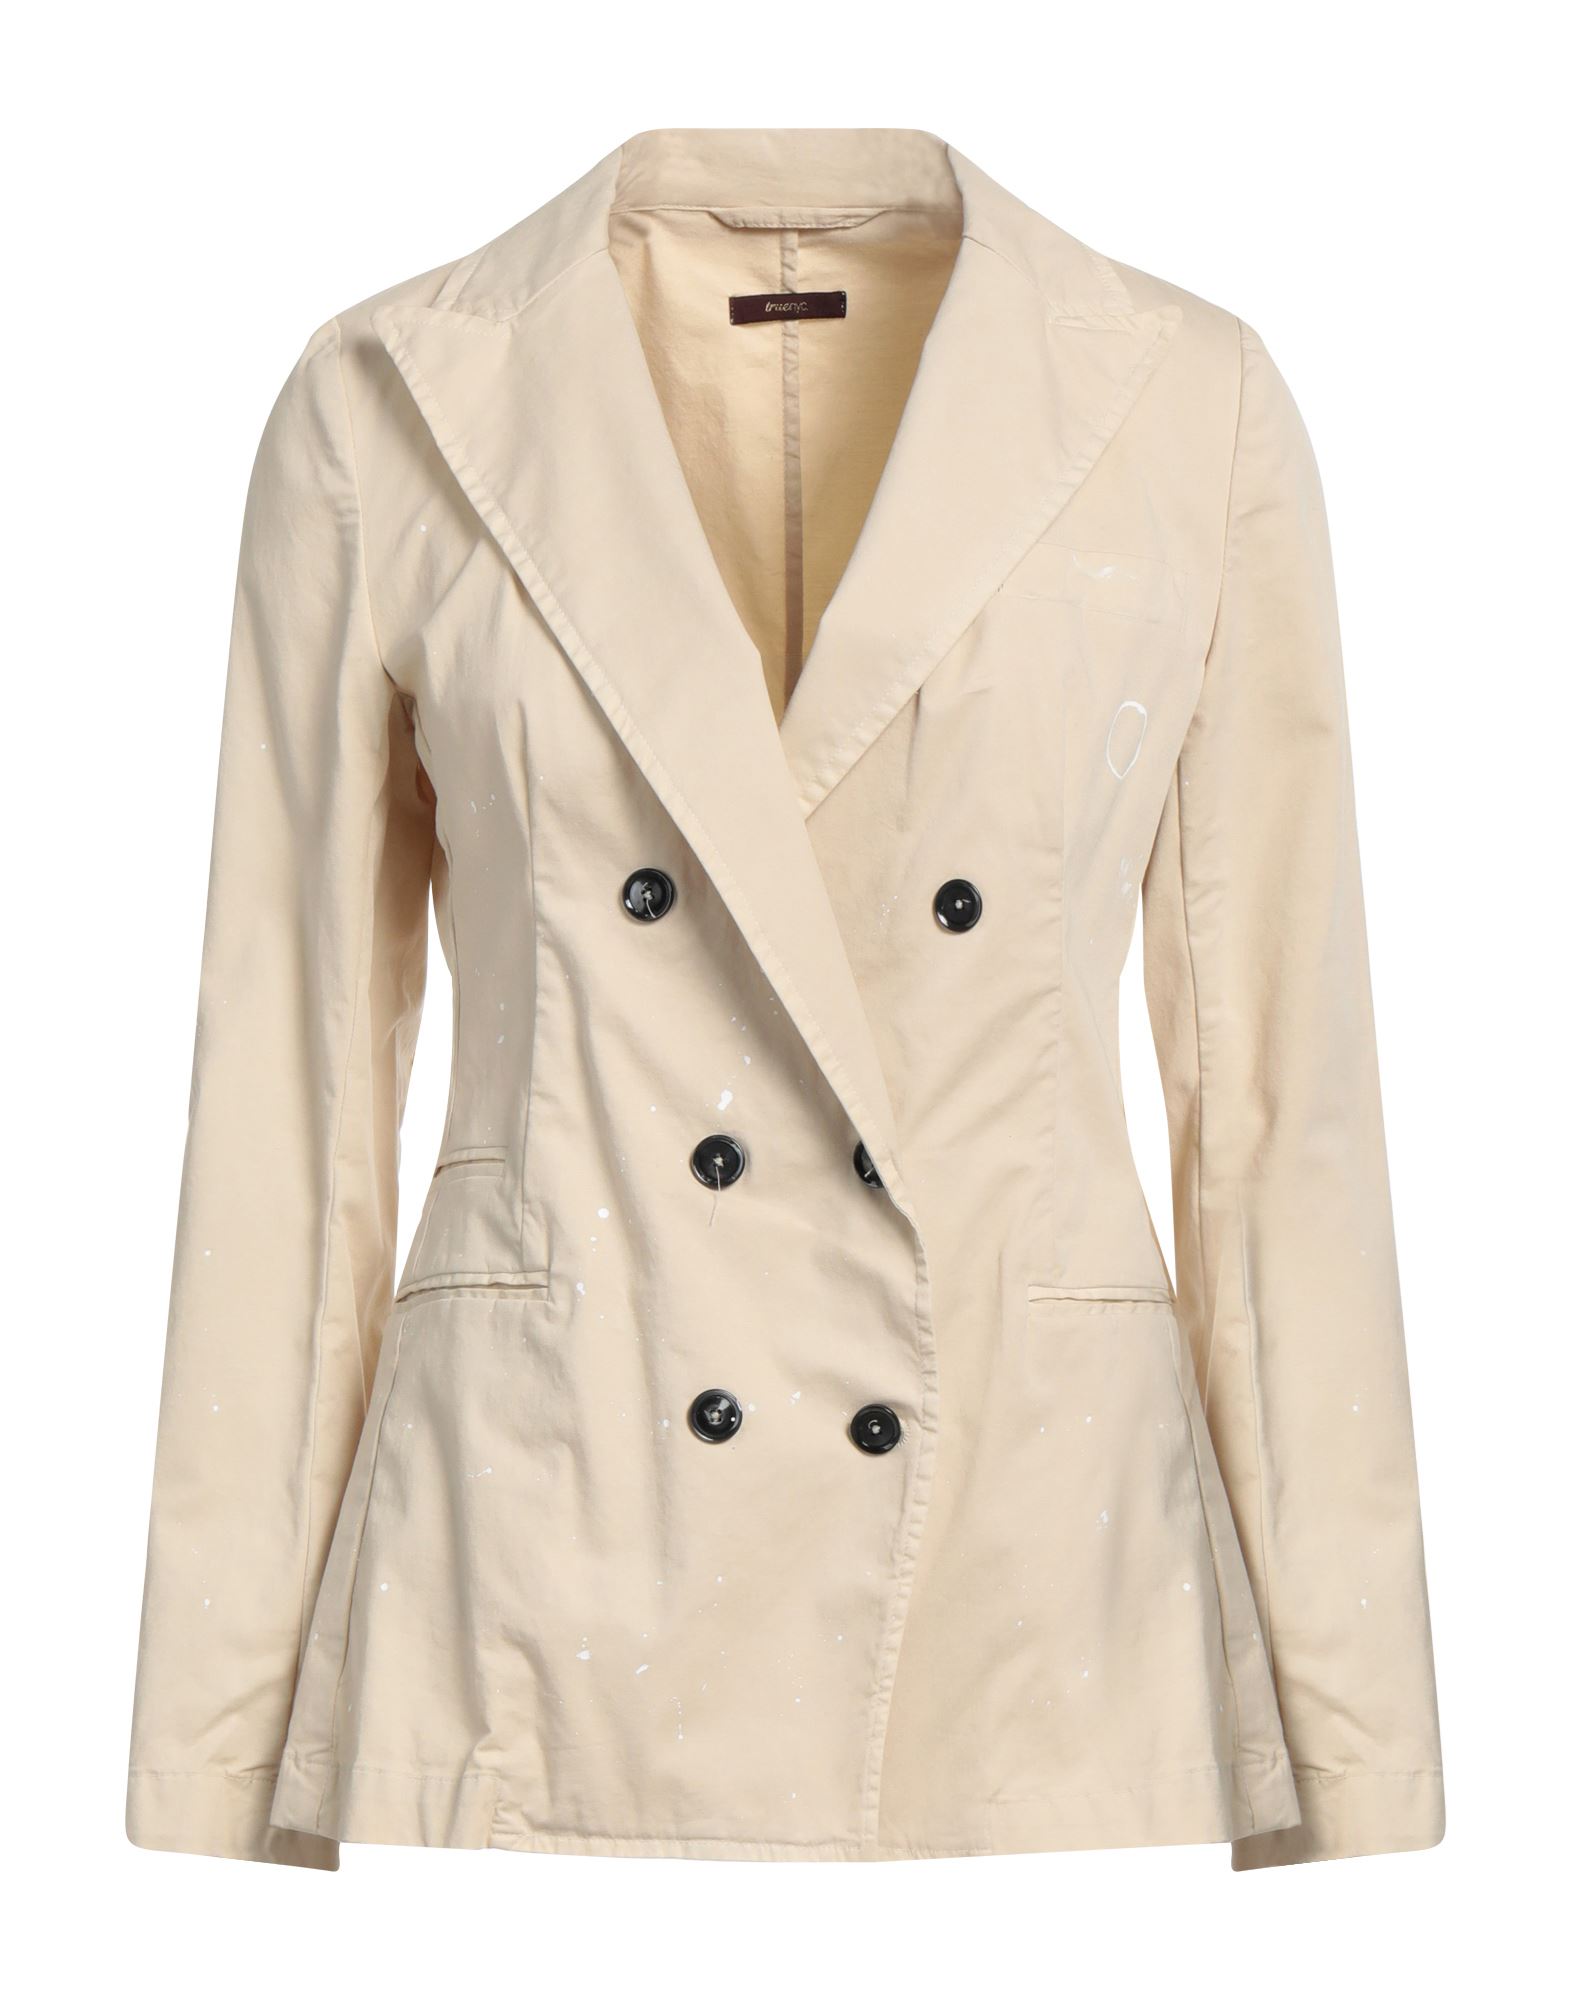 True Nyc Woman Suit Jacket Beige Size L Cotton